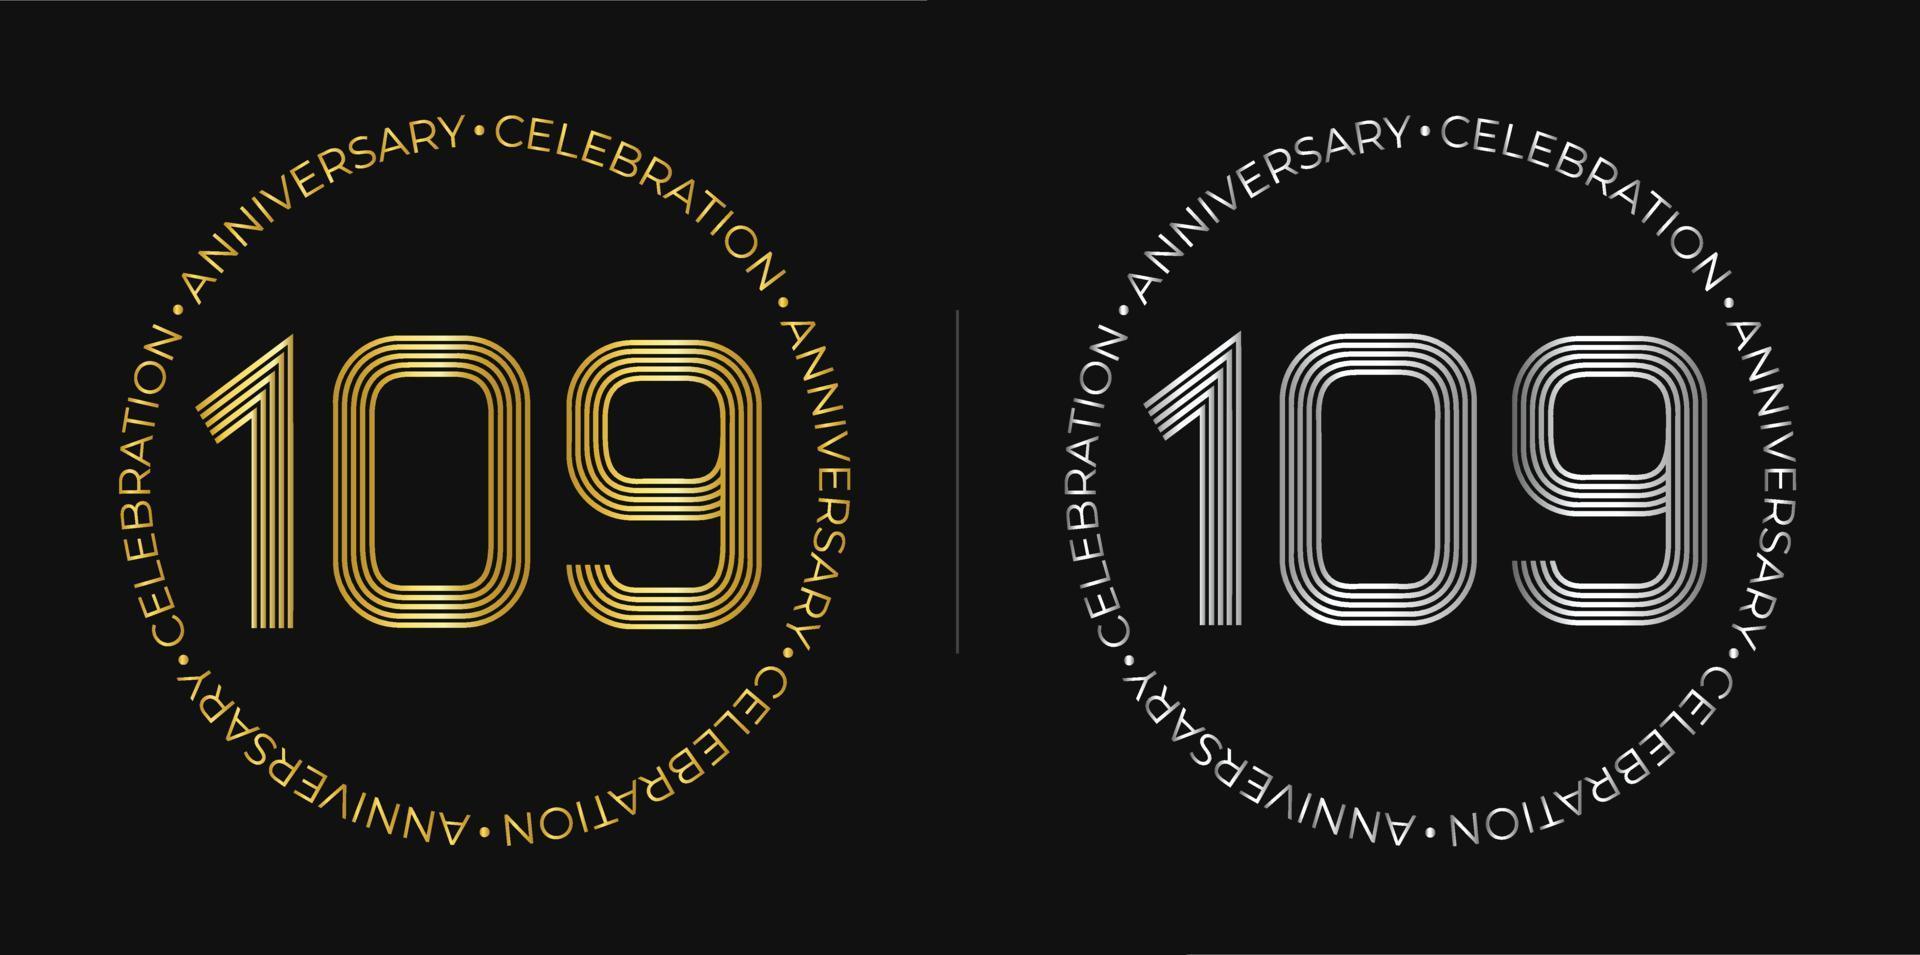 109 cumpleaños. Banner de celebración de aniversario de ciento nueve años en colores dorado y plateado. logo circular con diseño de números originales en líneas elegantes. vector